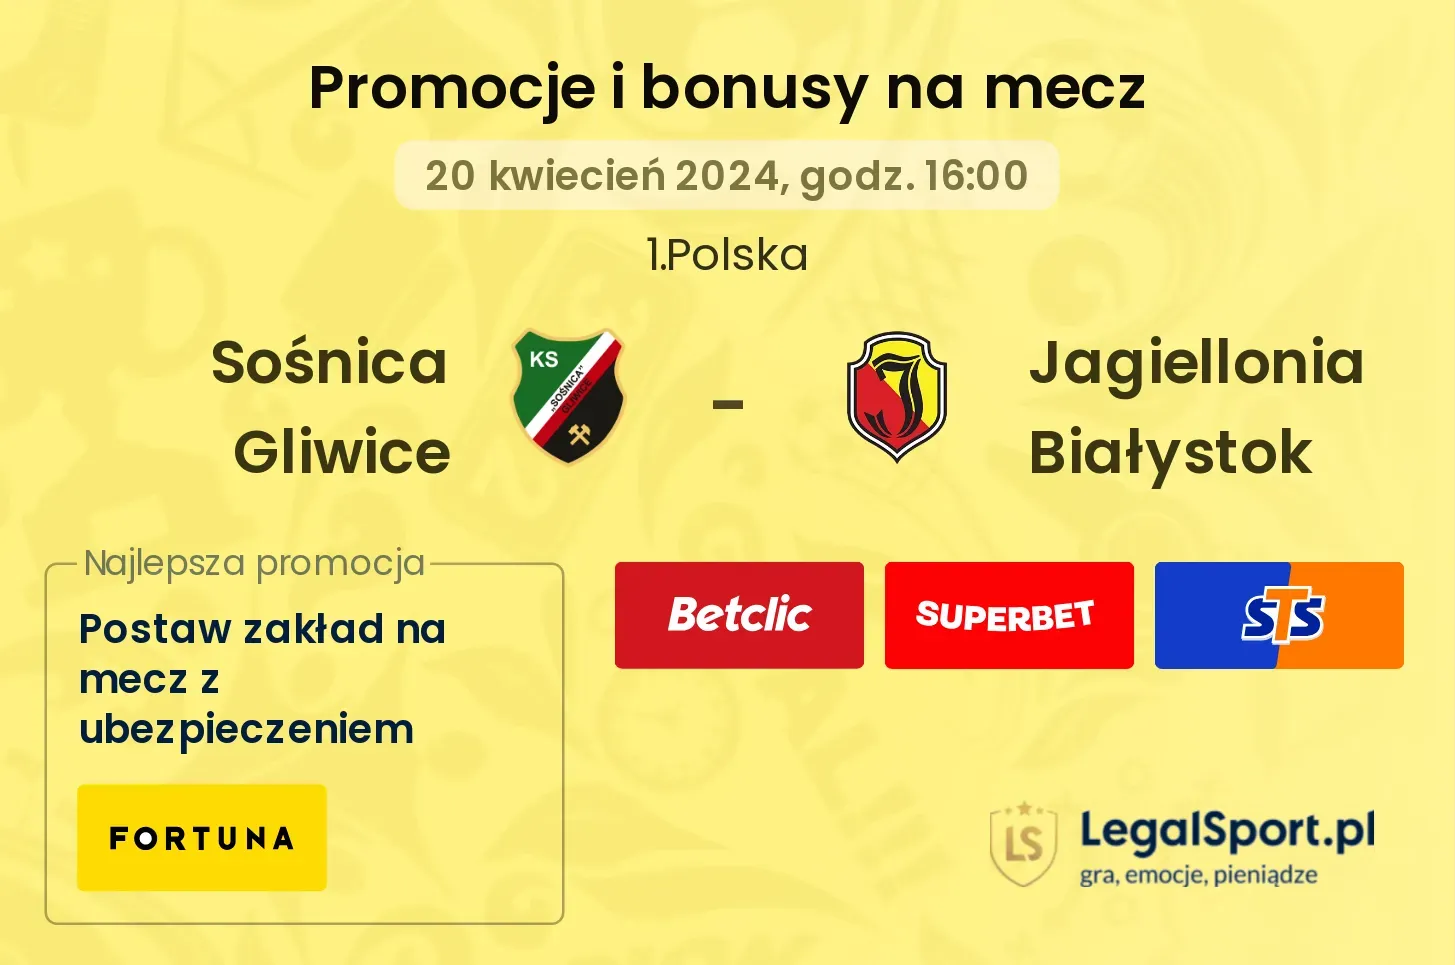 Sośnica Gliwice - Jagiellonia Białystok promocje bonusy na mecz